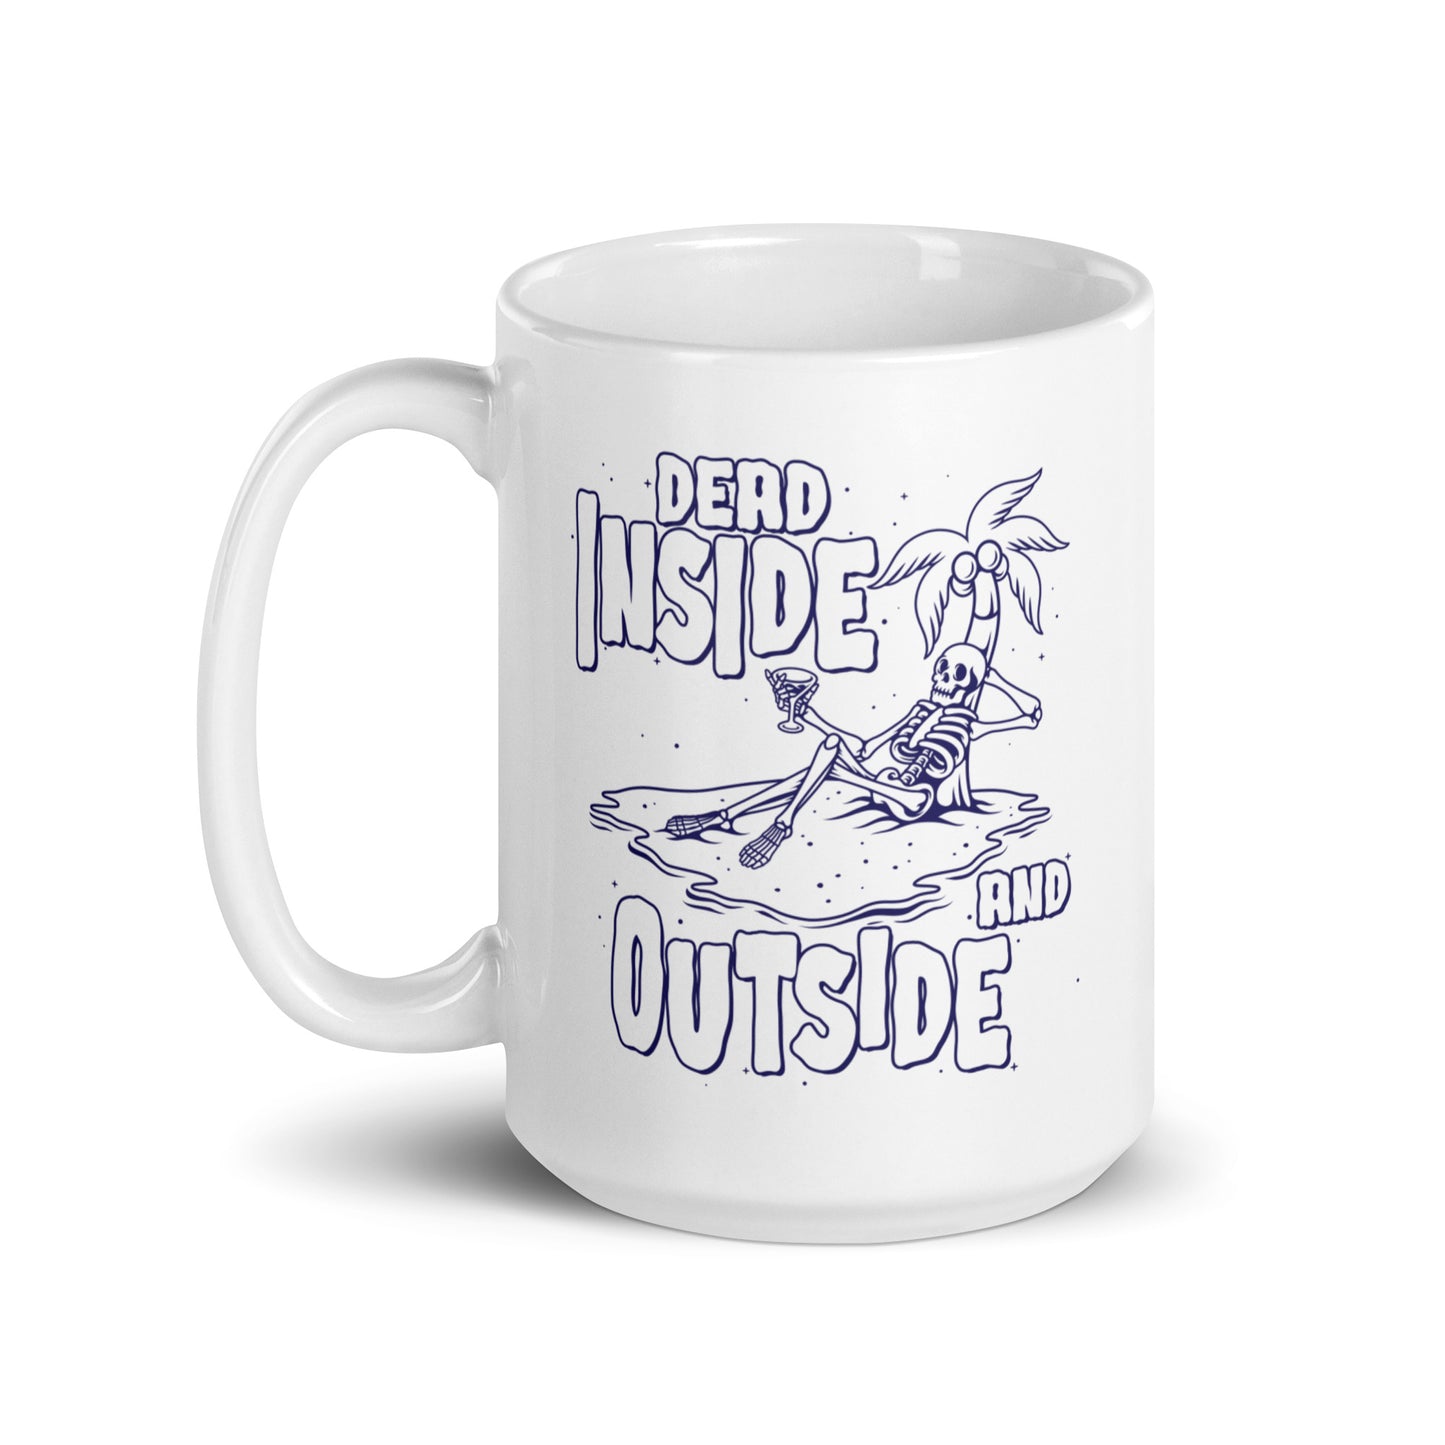 Dead Inside and Outside mug